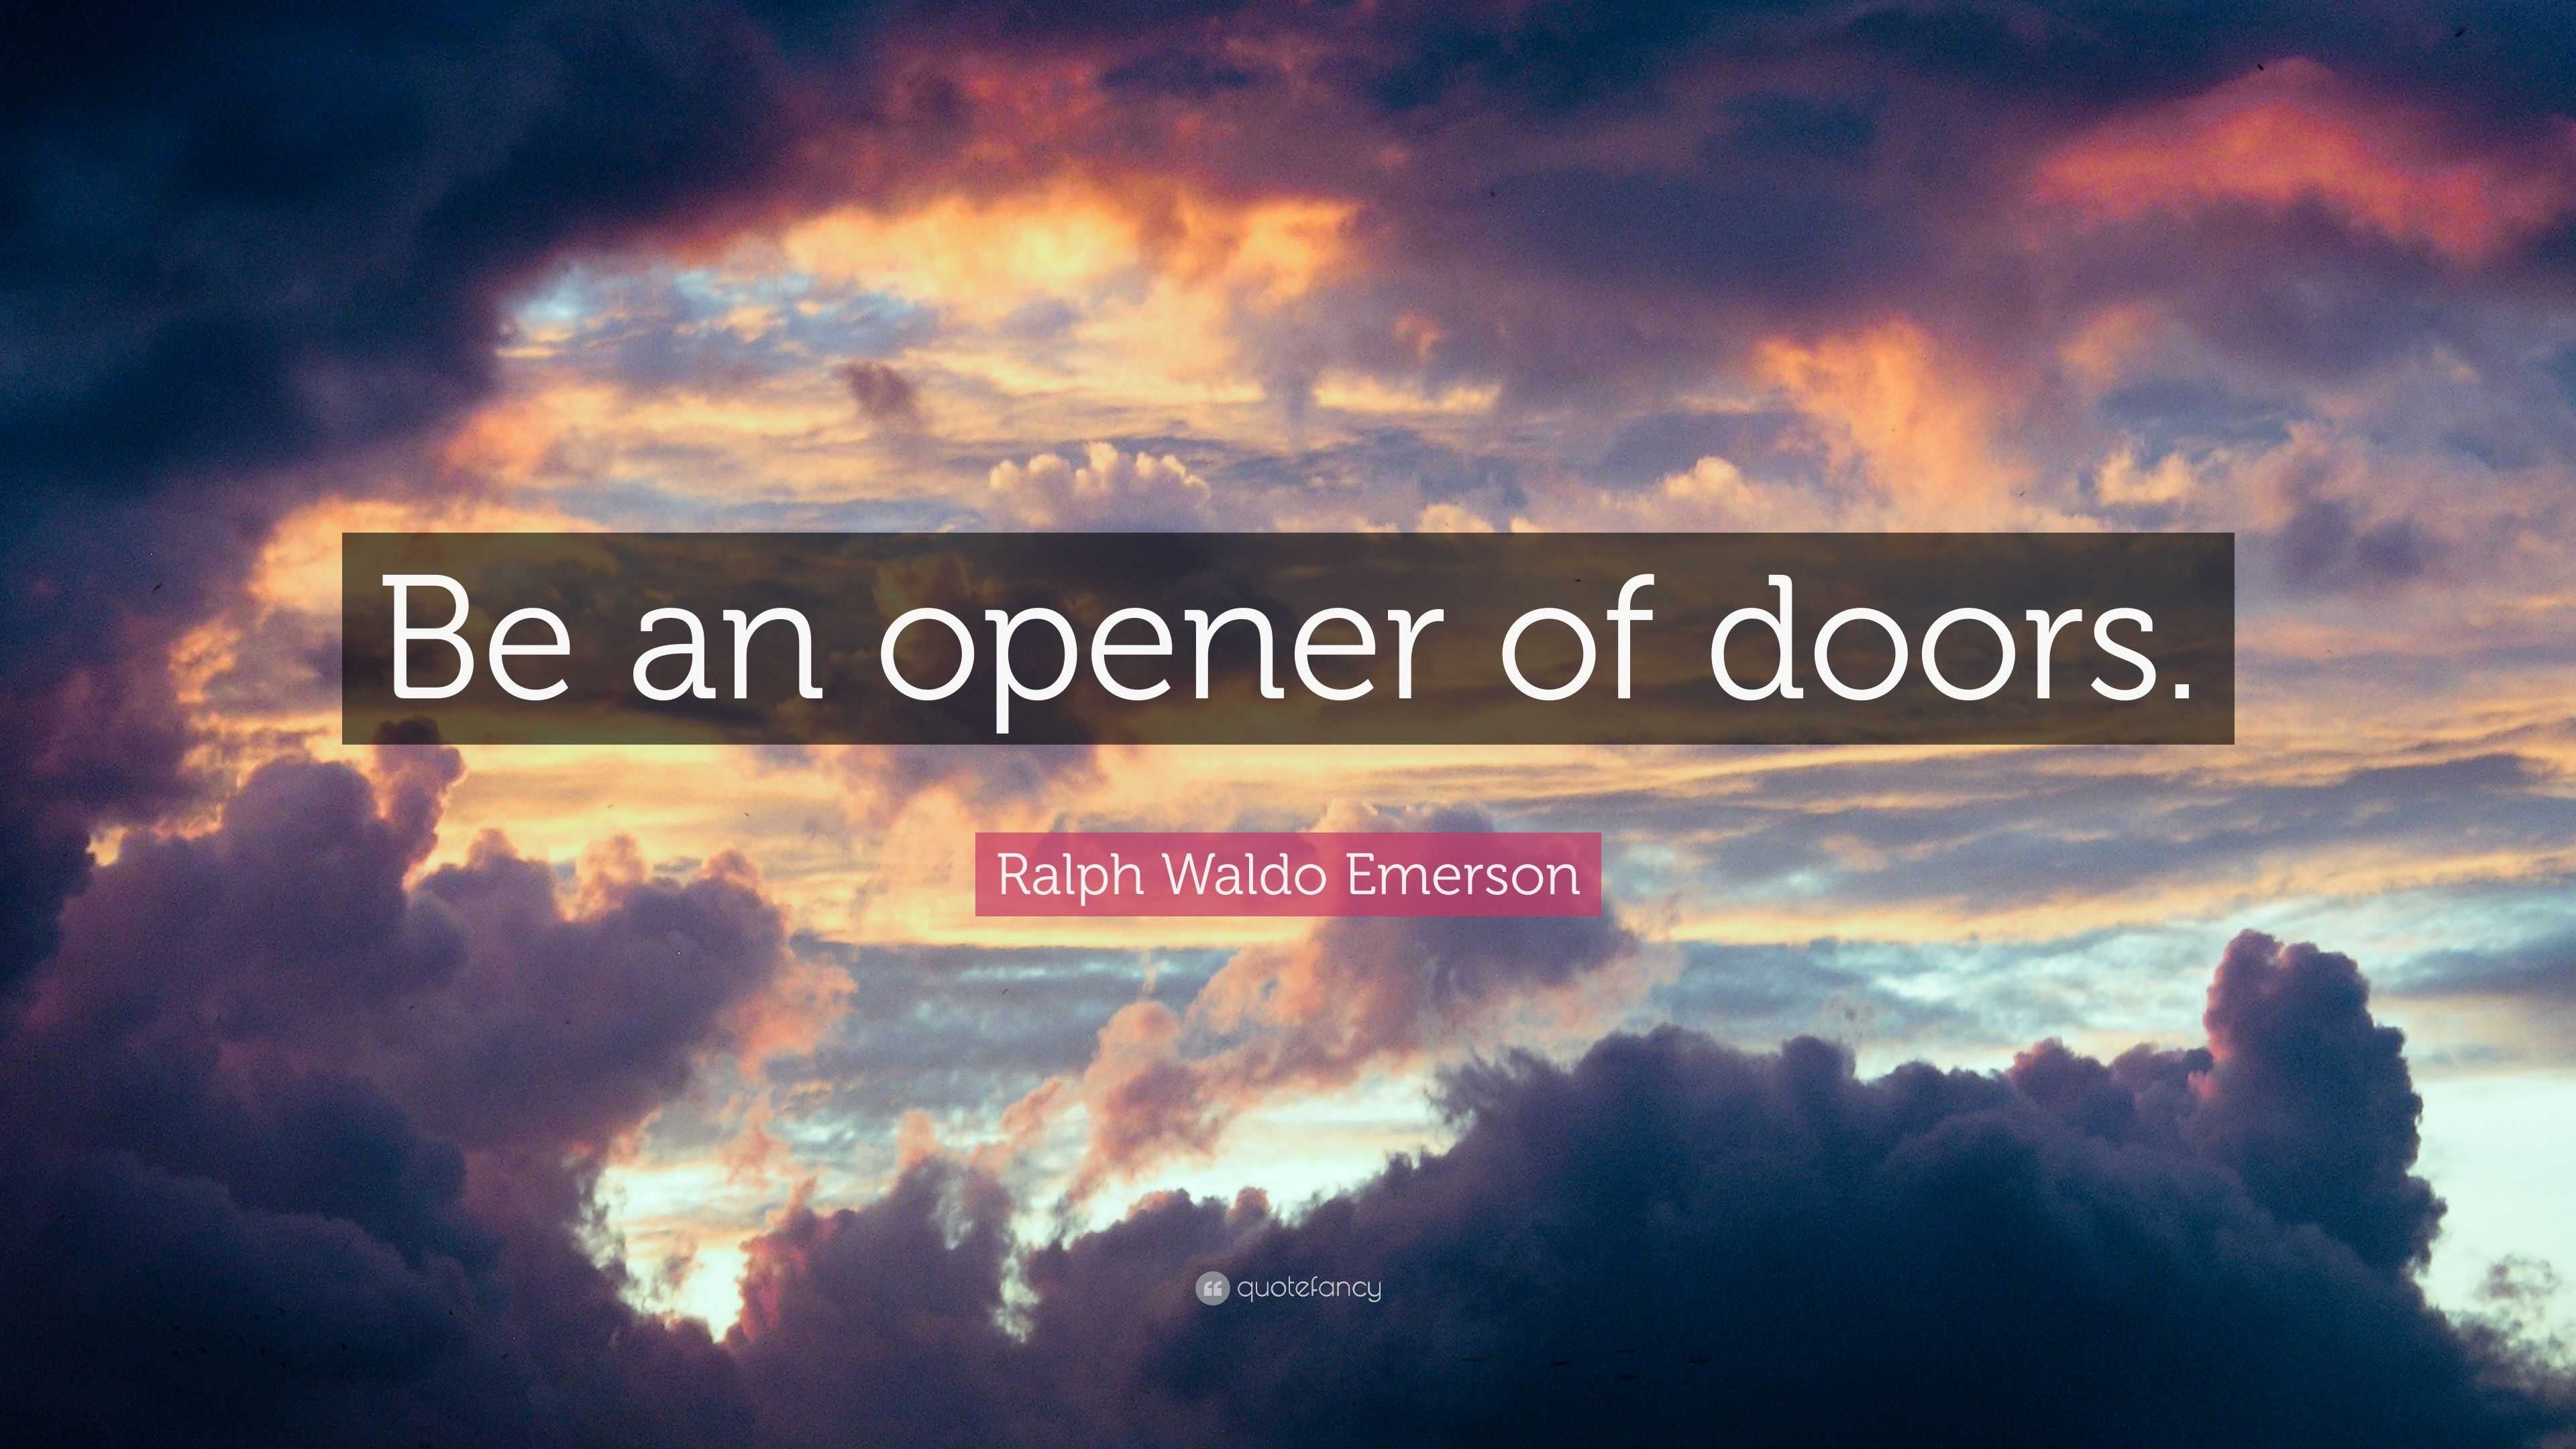 https://quotefancy.com/media/wallpaper/3840x2160/4805896-Ralph-Waldo-Emerson-Quote-Be-an-opener-of-doors.jpg